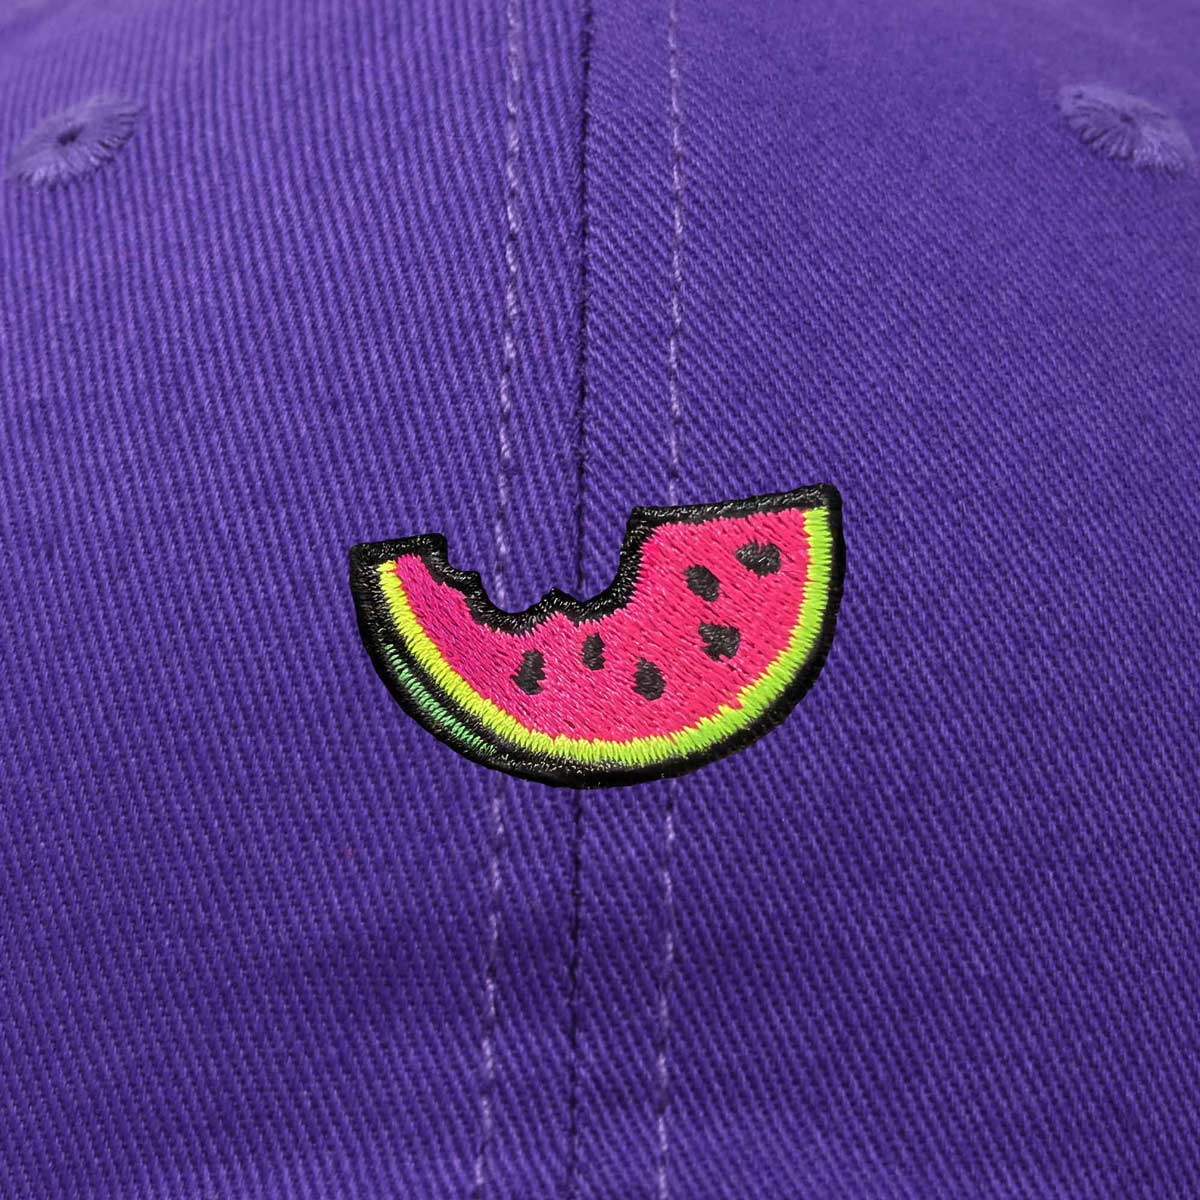 Dalix Bit Watermelon Hat